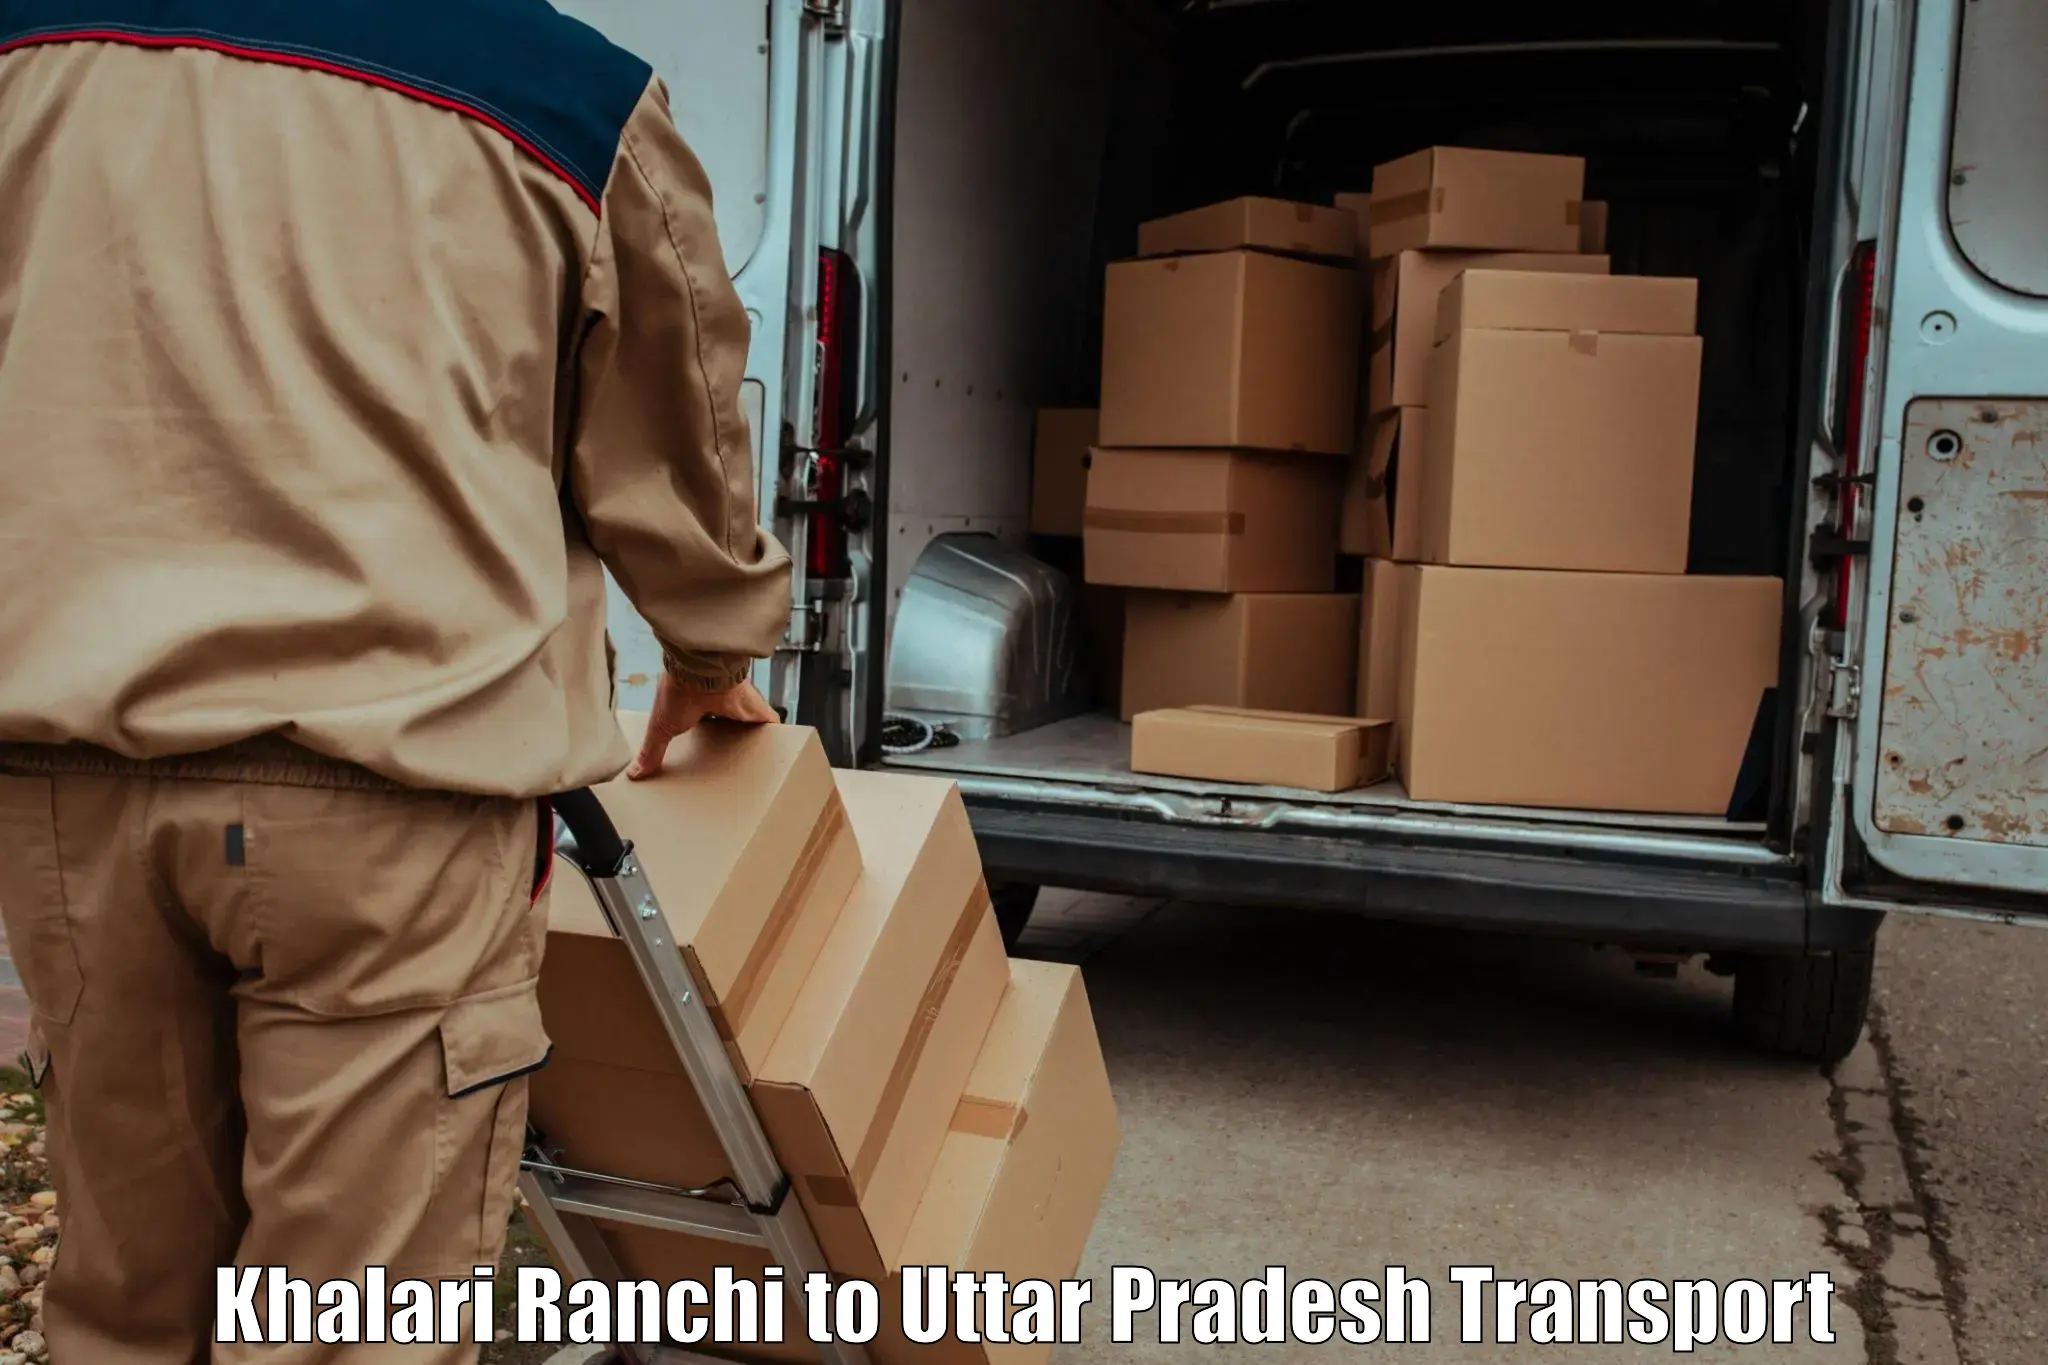 Furniture transport service Khalari Ranchi to Dhanghata